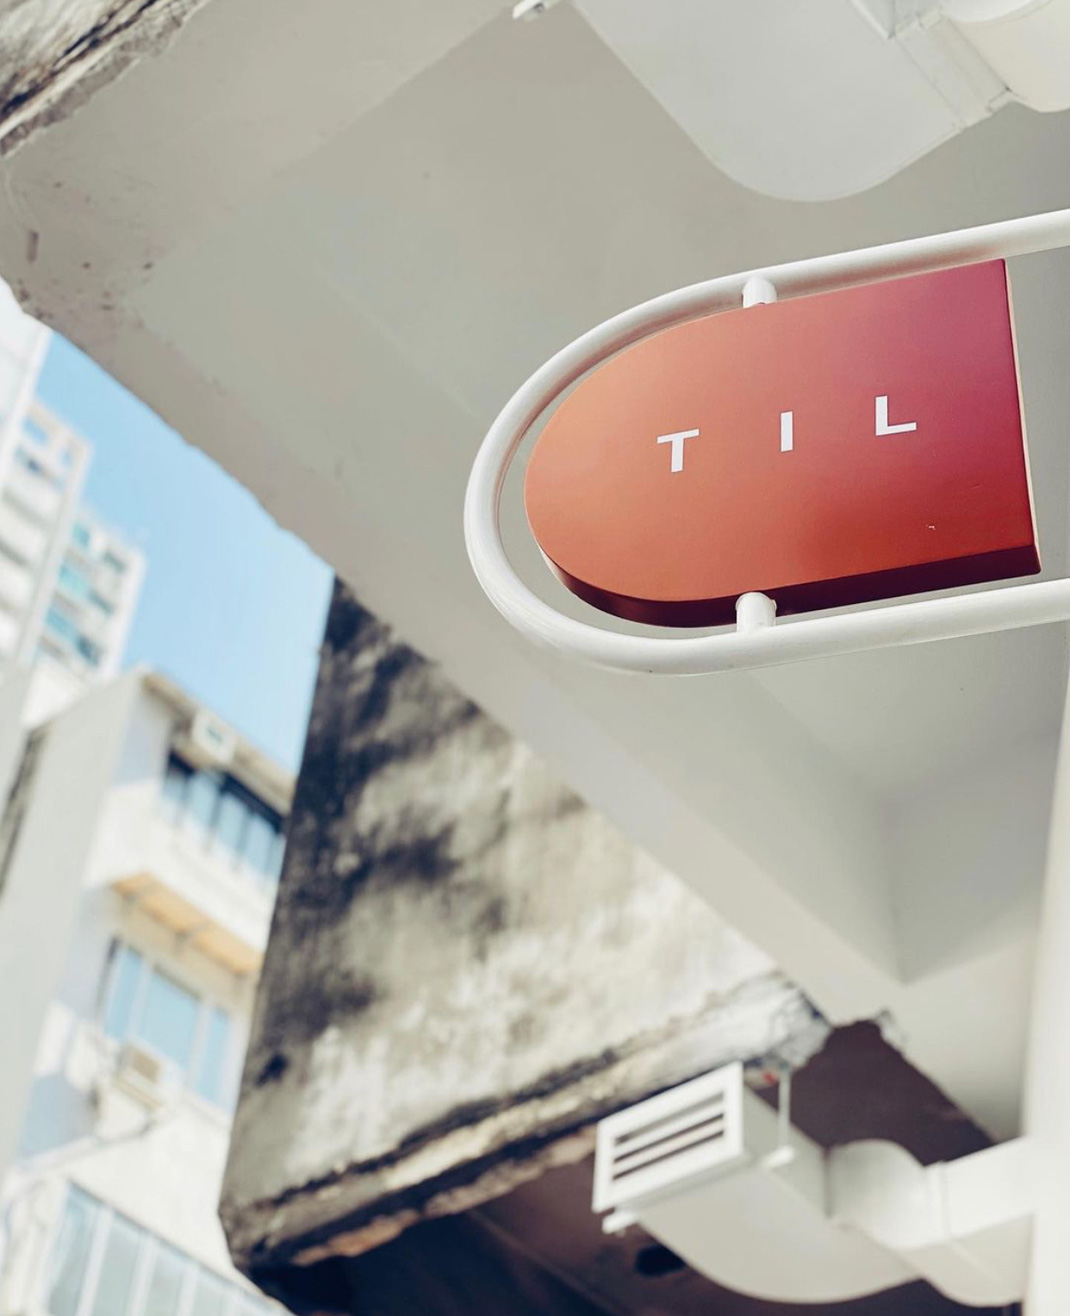 咖啡店TIL.Todayislong 香港 咖啡店 网红店 logo设计 vi设计 空间设计